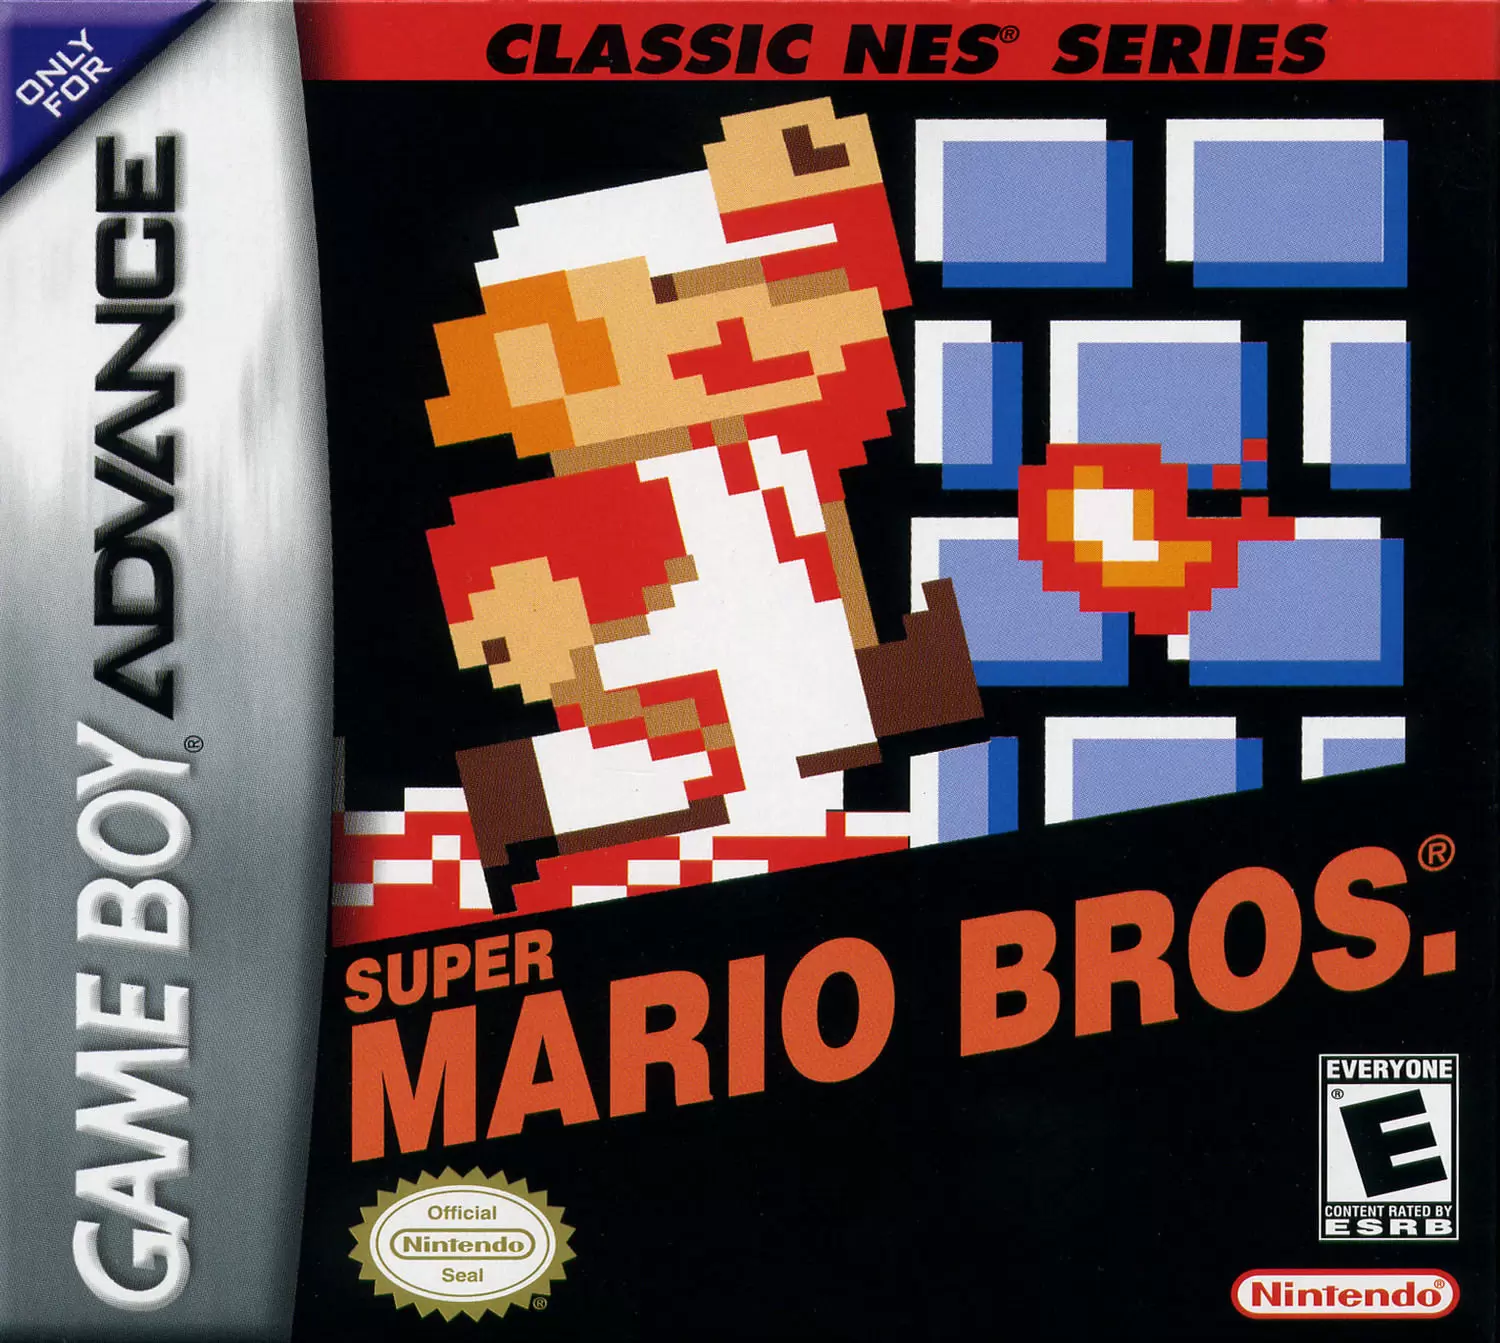 Mario bros snes. Super Mario Bros game boy Advance. NES Classic super Mario Bros GBA. Classic NES Series: super Mario Bros.. Classic NES Series super Mario Bros. GBA.